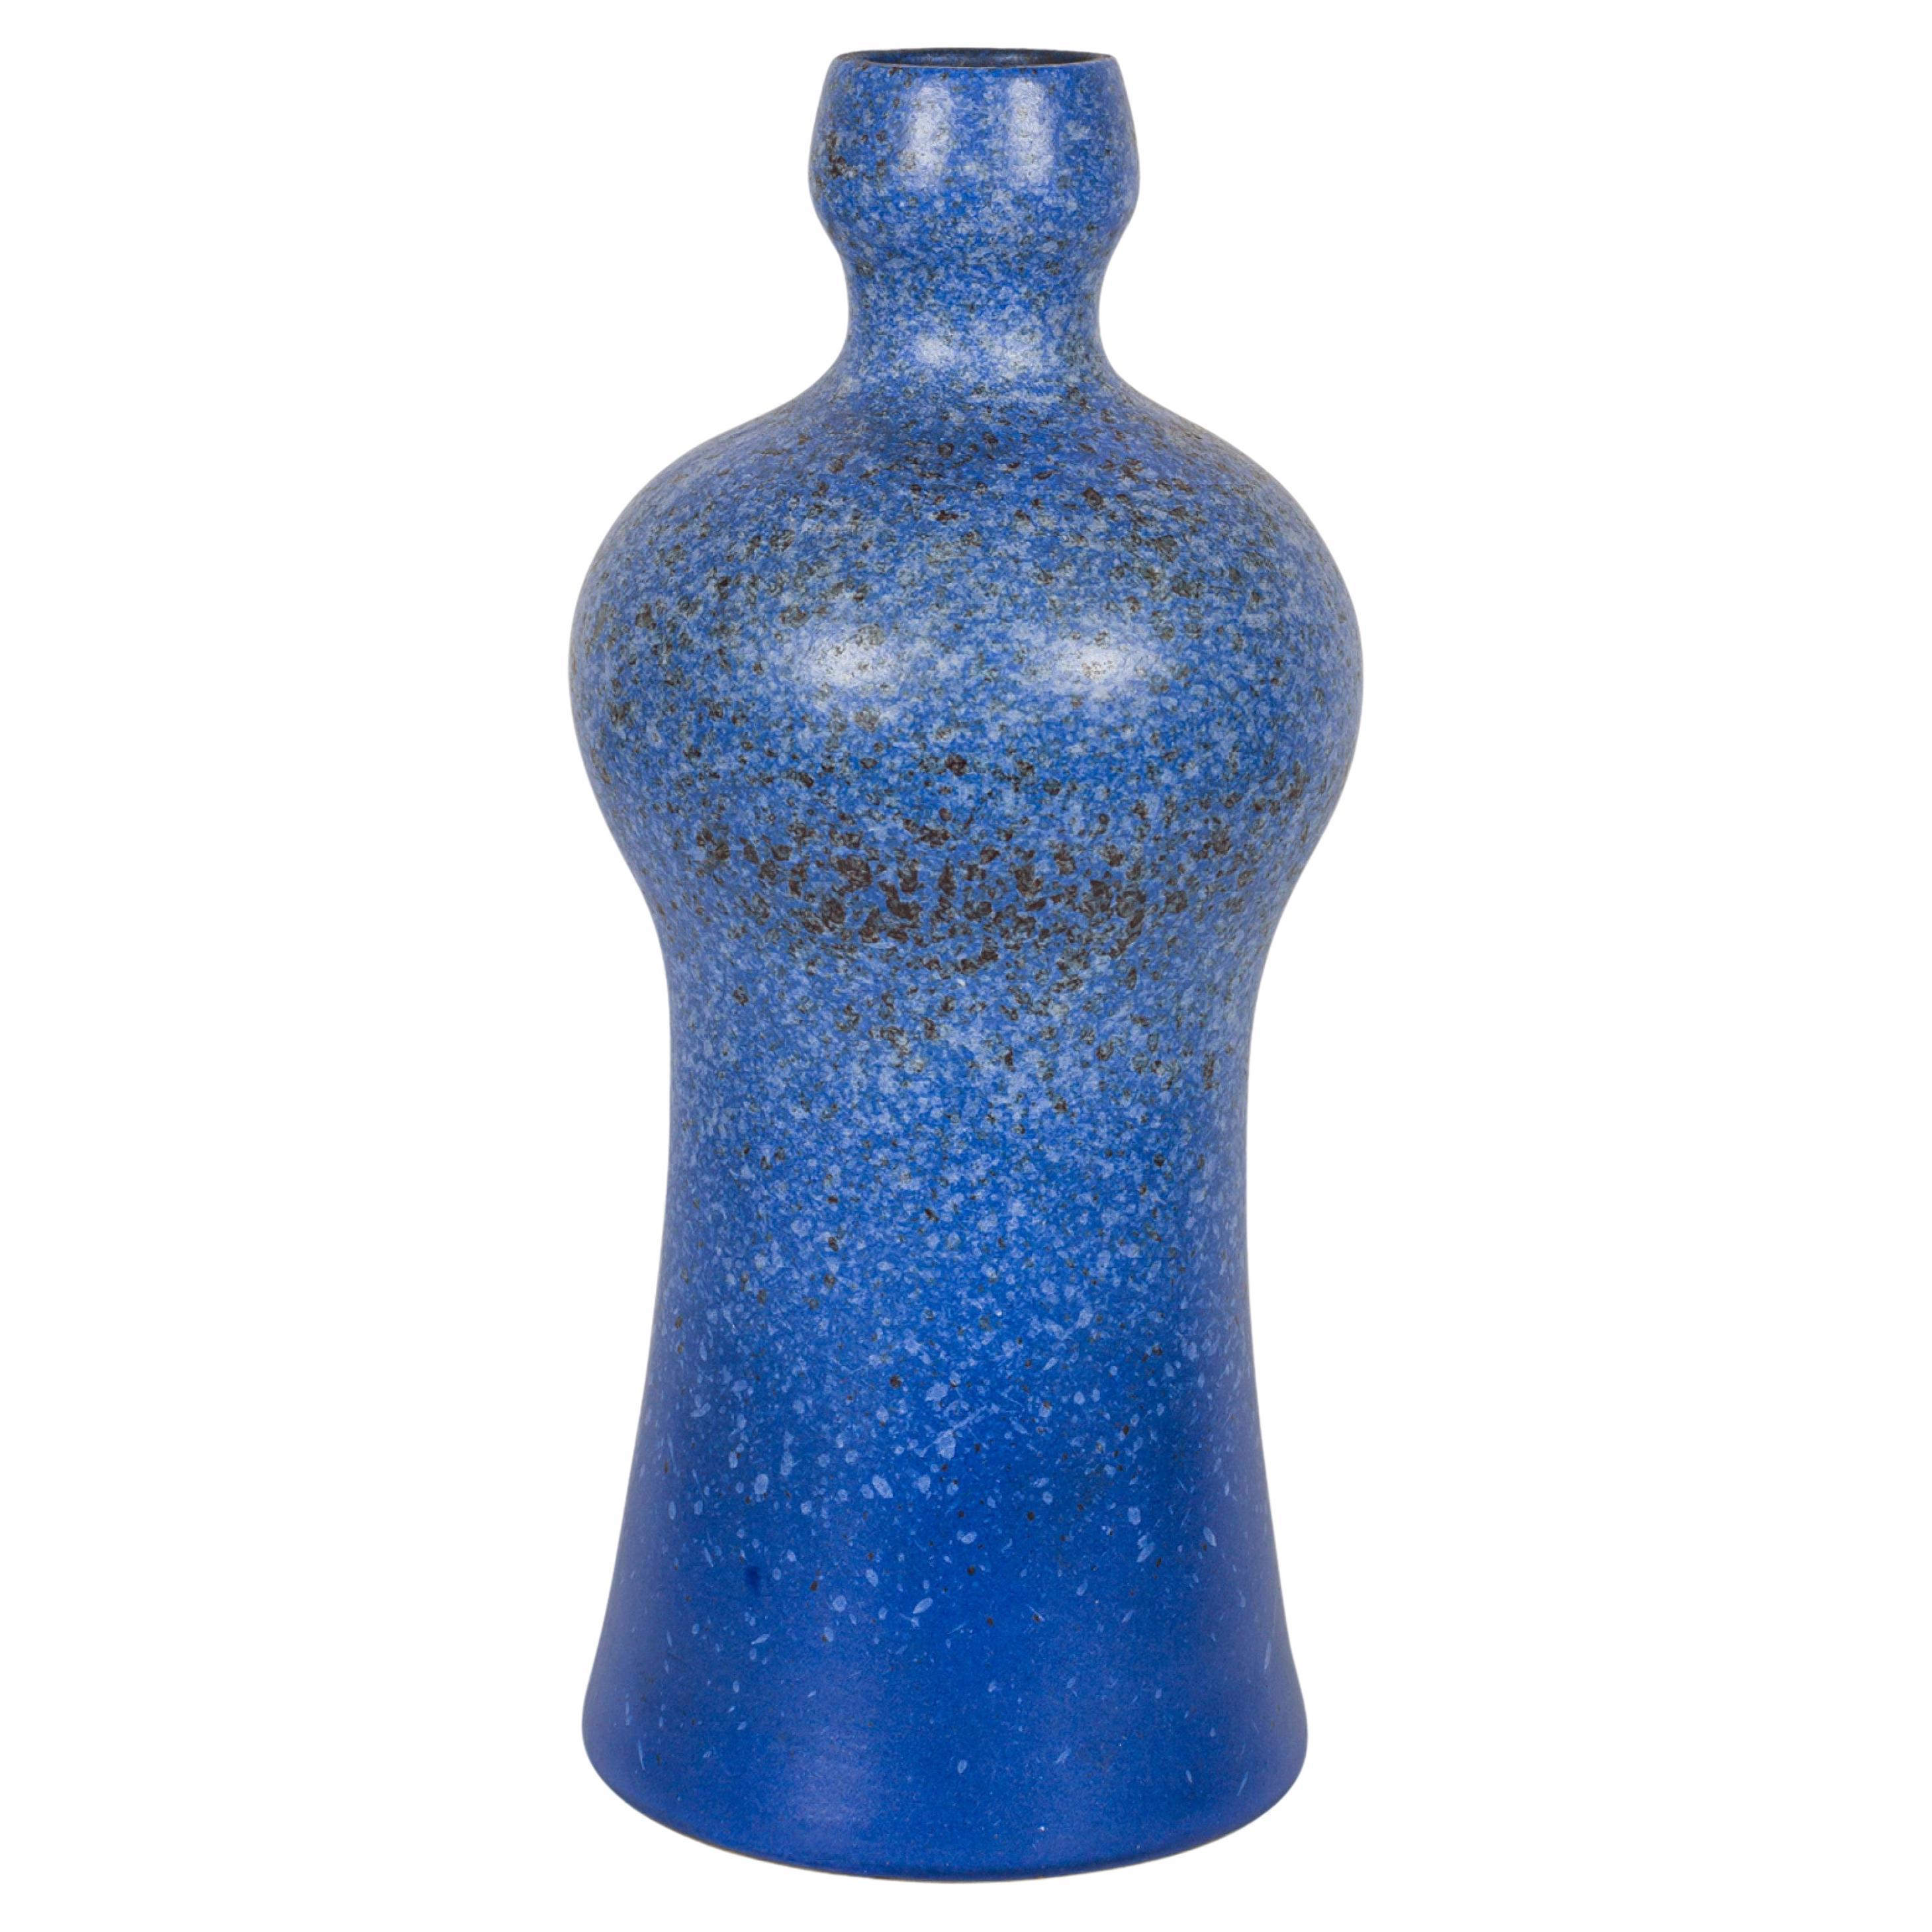 Strehla Keramik East German Mid-Century Speckled Blue Glazed Ceramic Bottle Vase For Sale